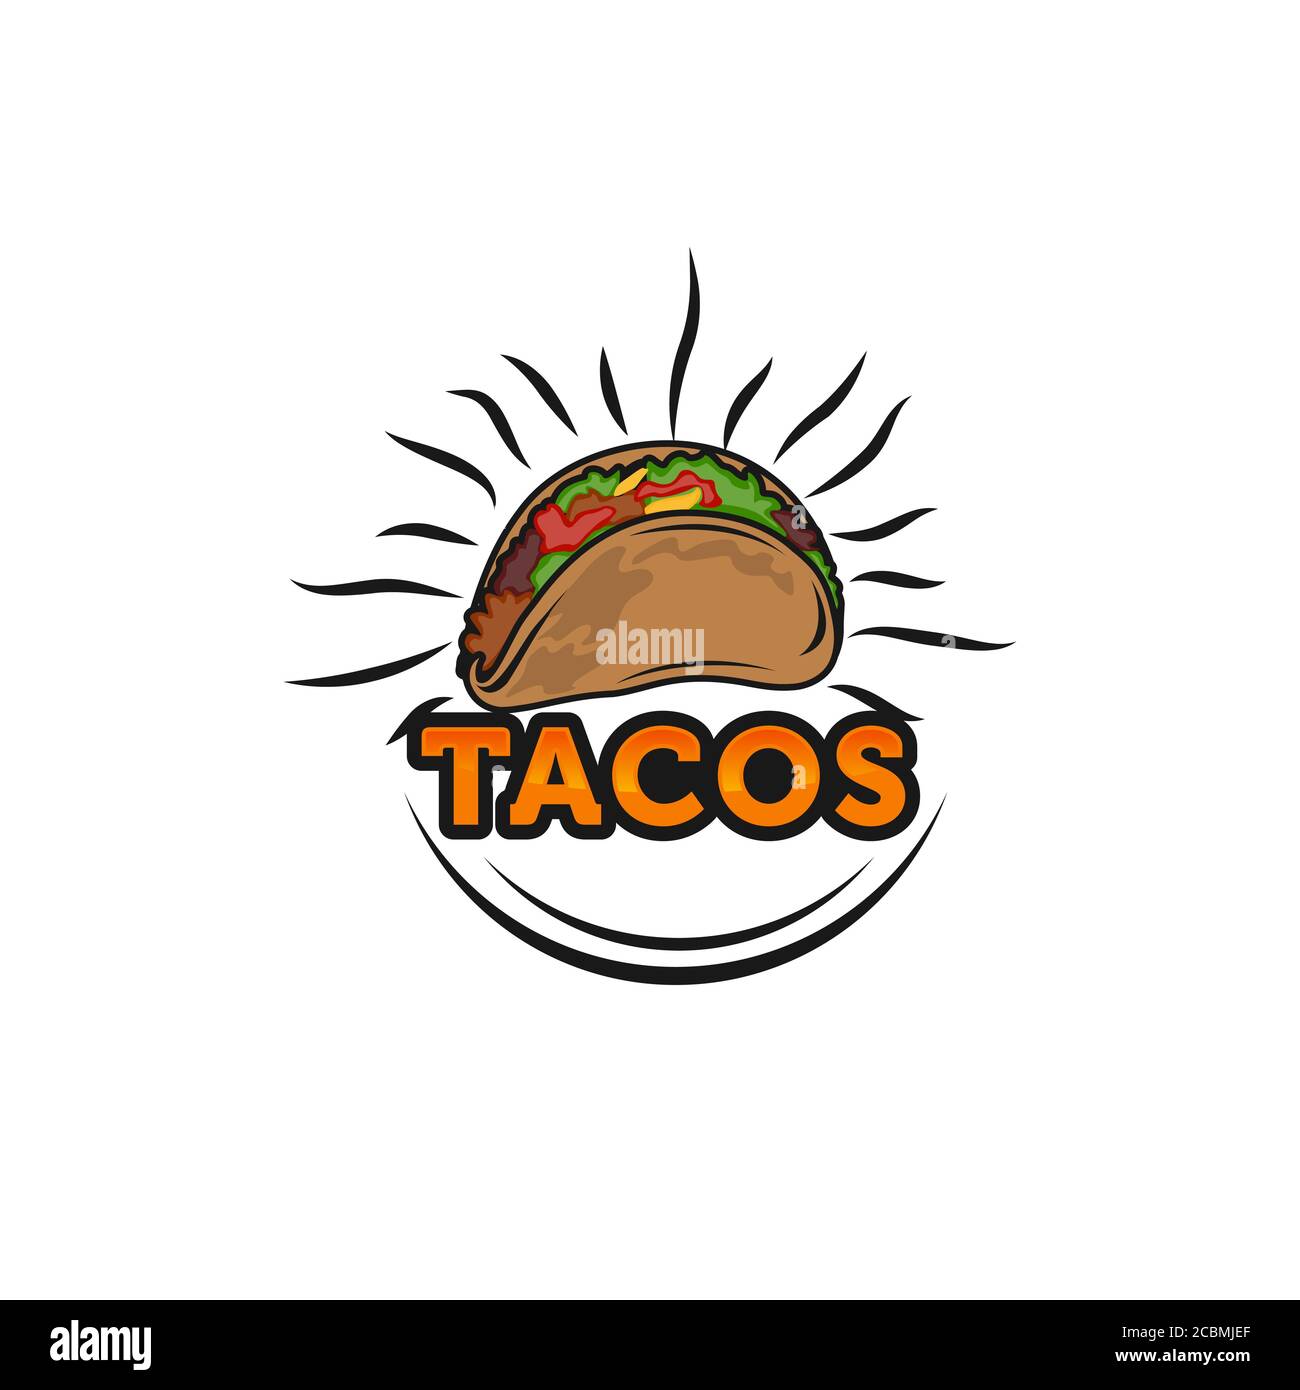 Illustrazione vettoriale del design del logo Taco. La silhouette di salsiccia di cane caldo, buono per il menu del ristorante e il badge del caffè. Modello logotipo tipografico vintage. Illustrazione Vettoriale